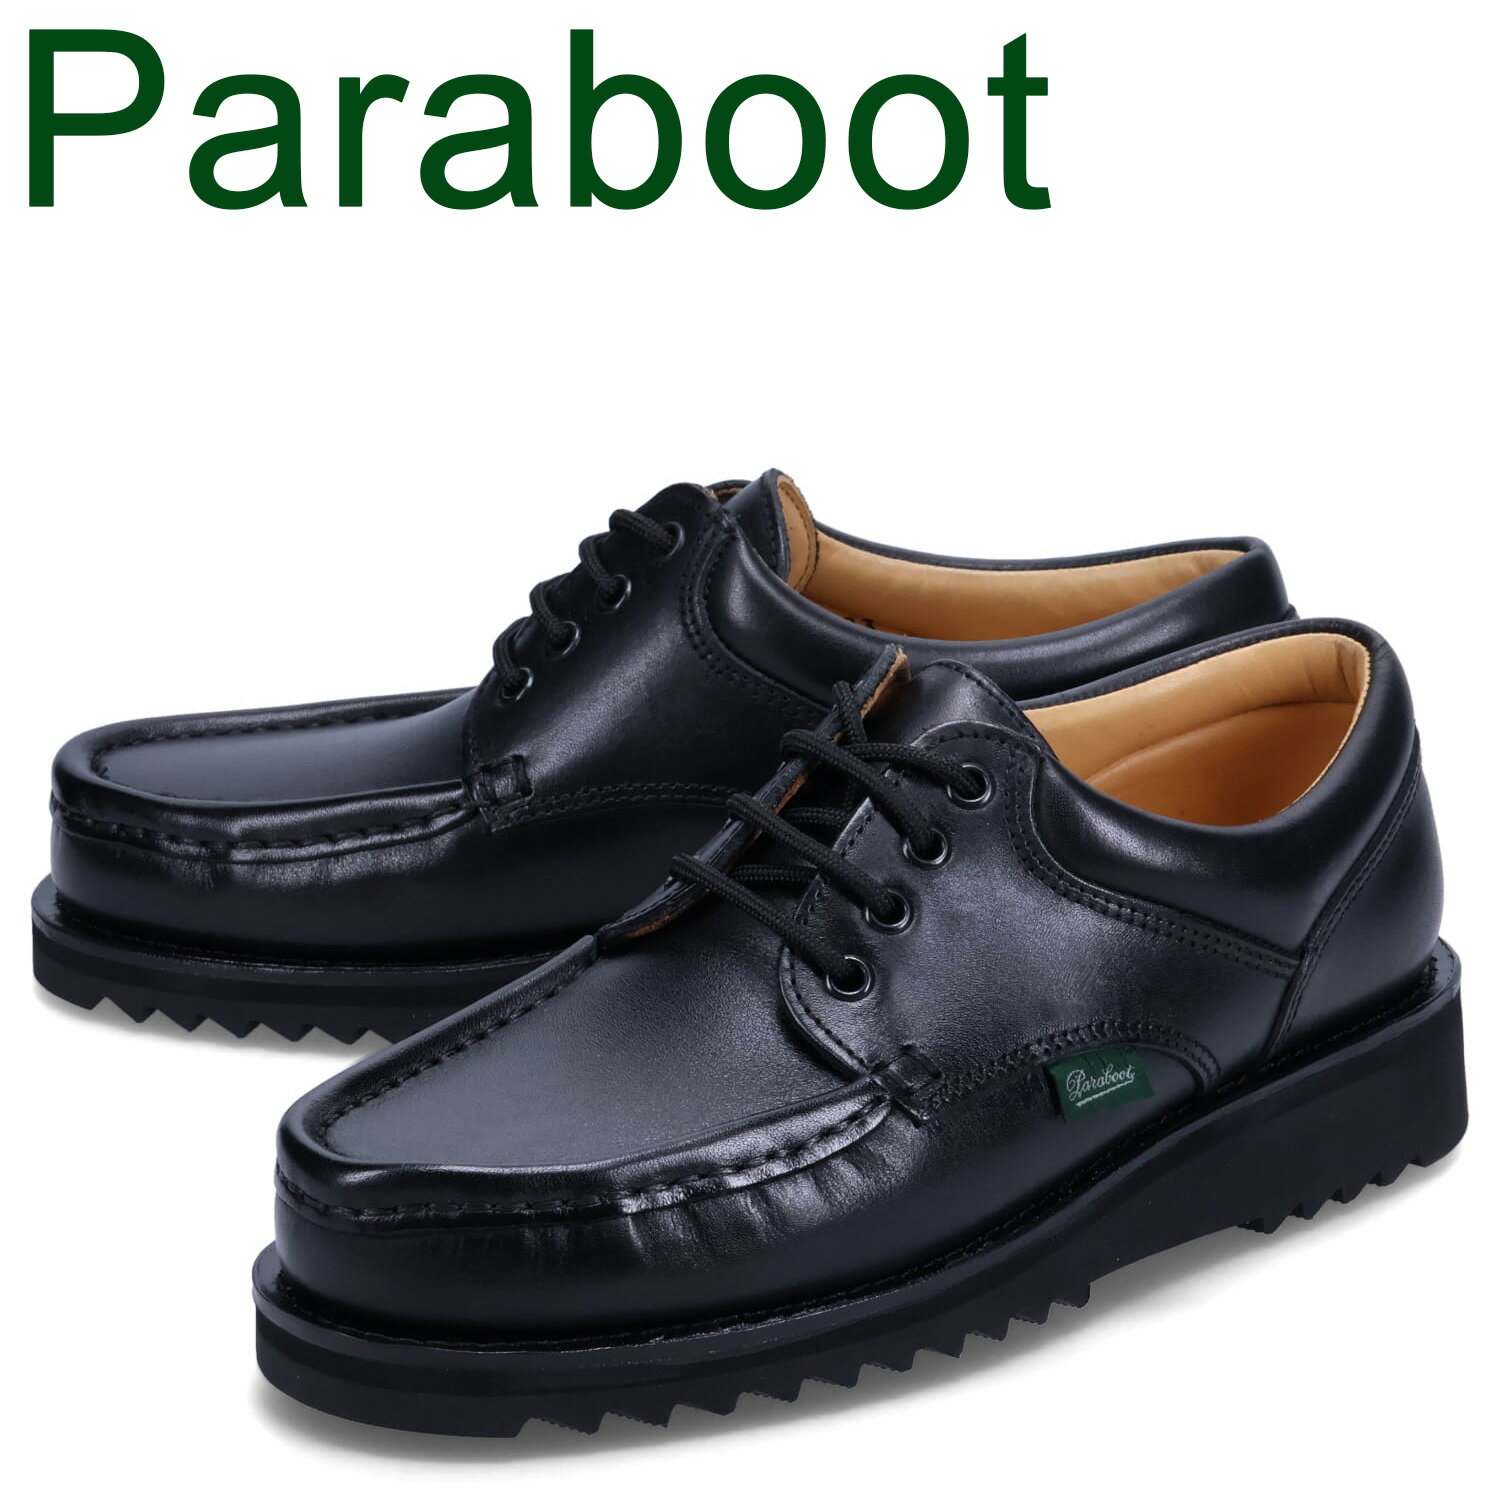 パラブーツ 靴 メンズ パラブーツ PARABOOT ティエール レザーシューズ ビジネス メンズ THIERS 本革 ブラック 黒 786404